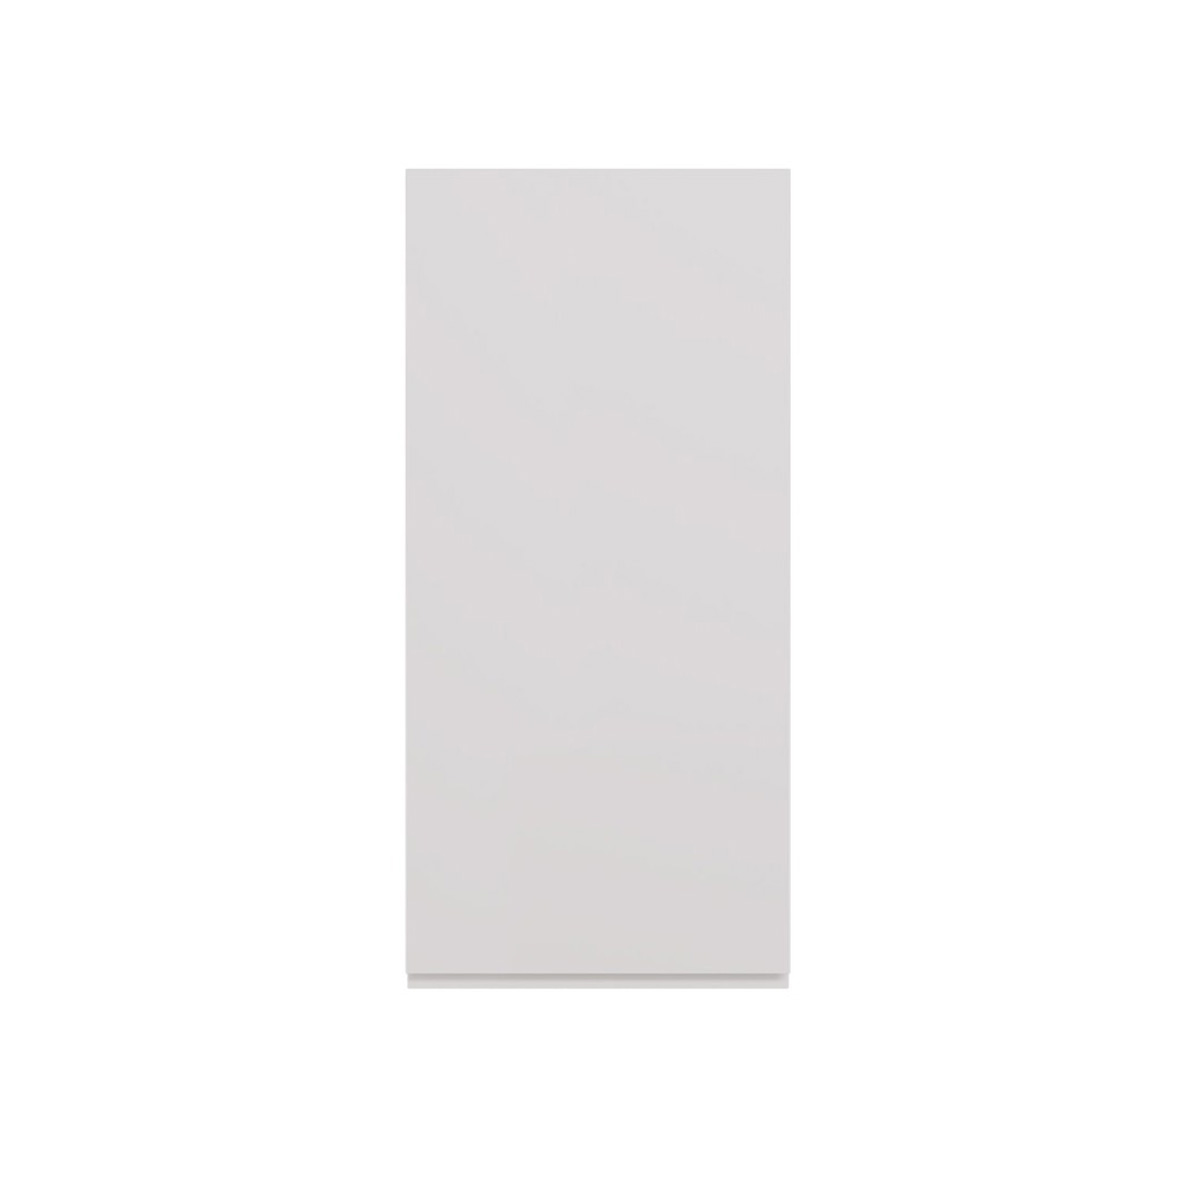 Полупенал Lemark VEON 35 см подвесной, 1 дверный, правый, цвет корпуса, фасада: Белый глянец